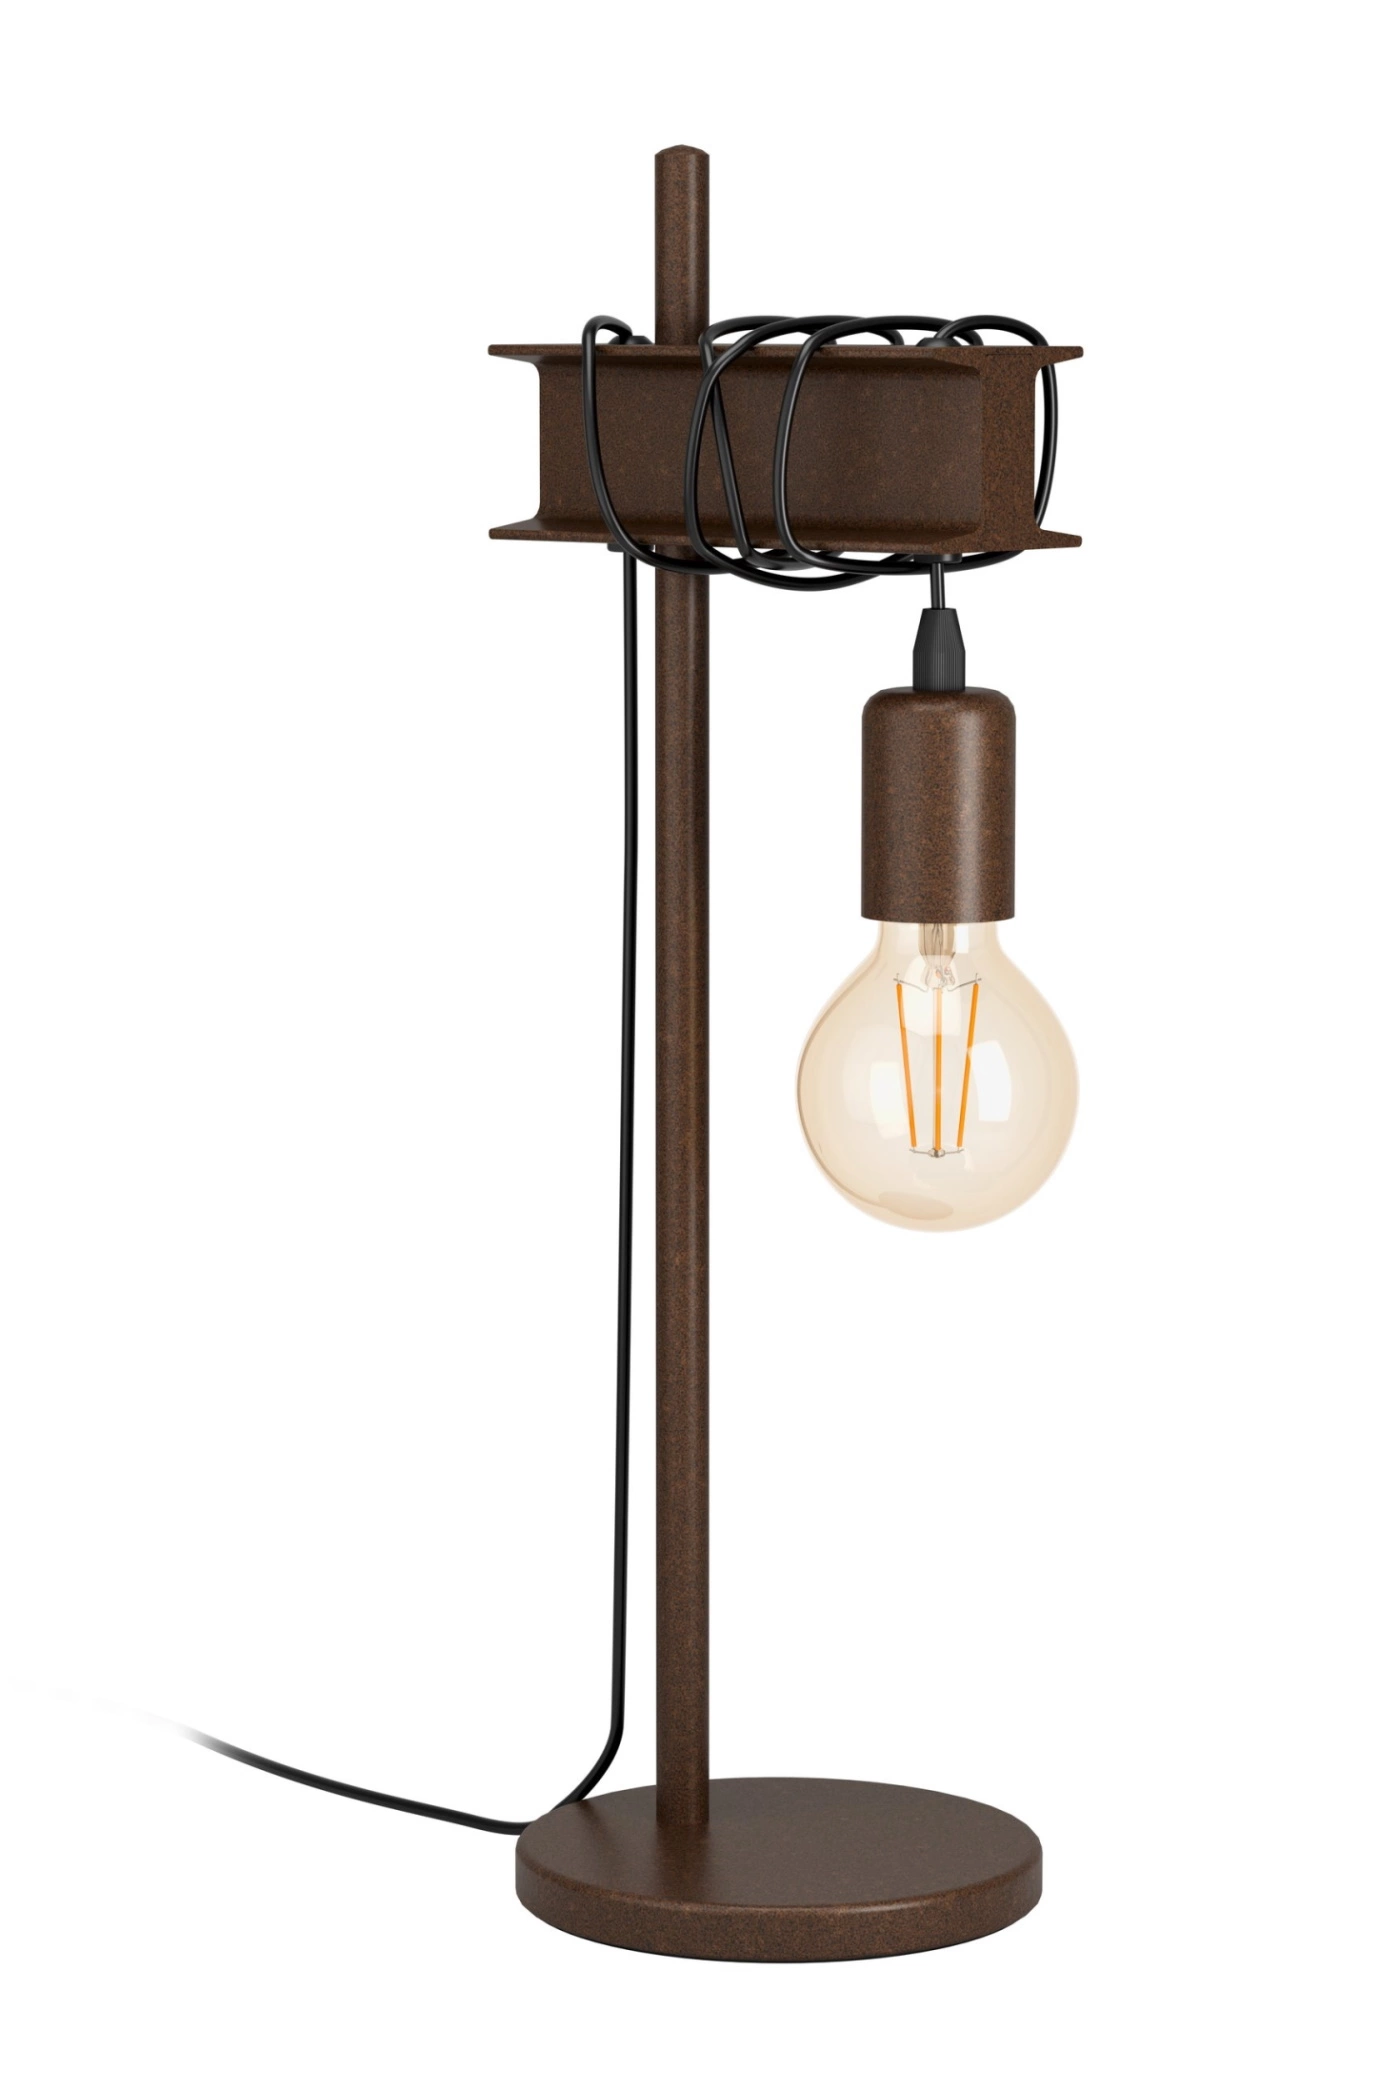   
                        Настільна лампа EGLO (Австрія) 54109    
                         у стилі Лофт.  
                        Тип джерела світла: cвітлодіодні led, енергозберігаючі, розжарювання.                                                                                                  фото 1